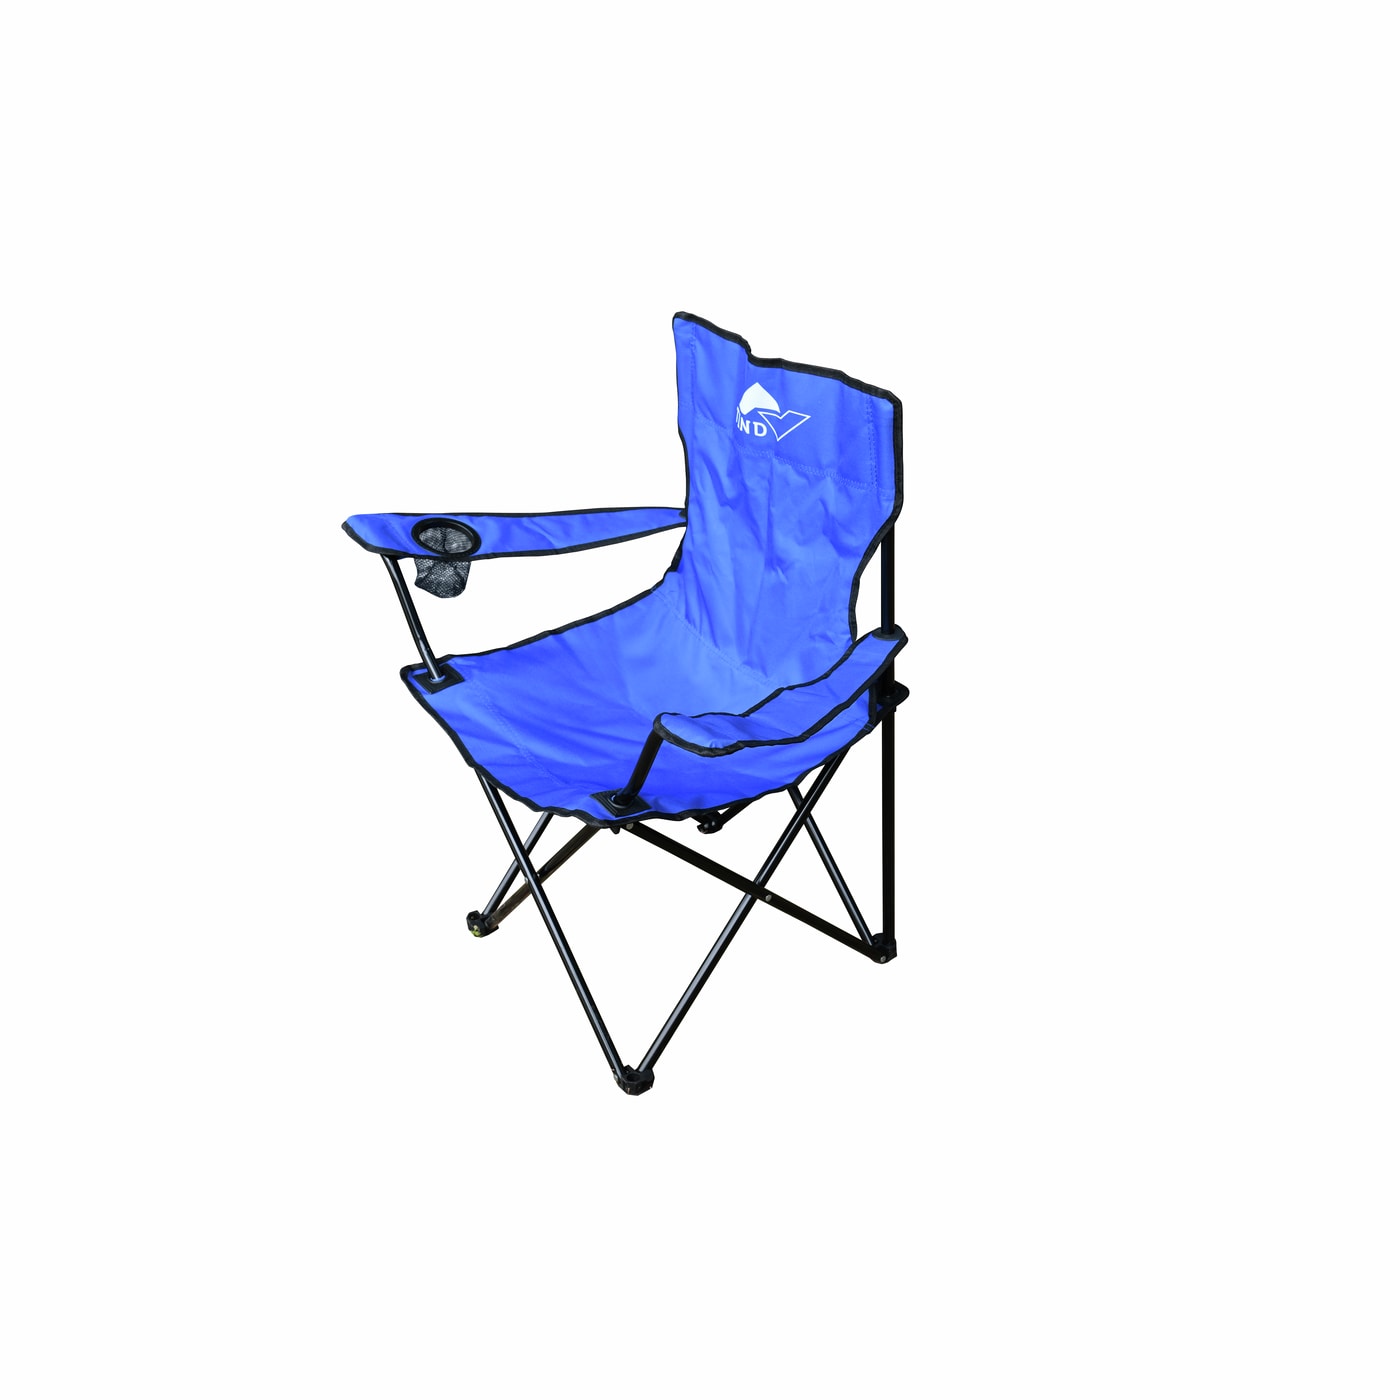 TIND campingstol med armlene